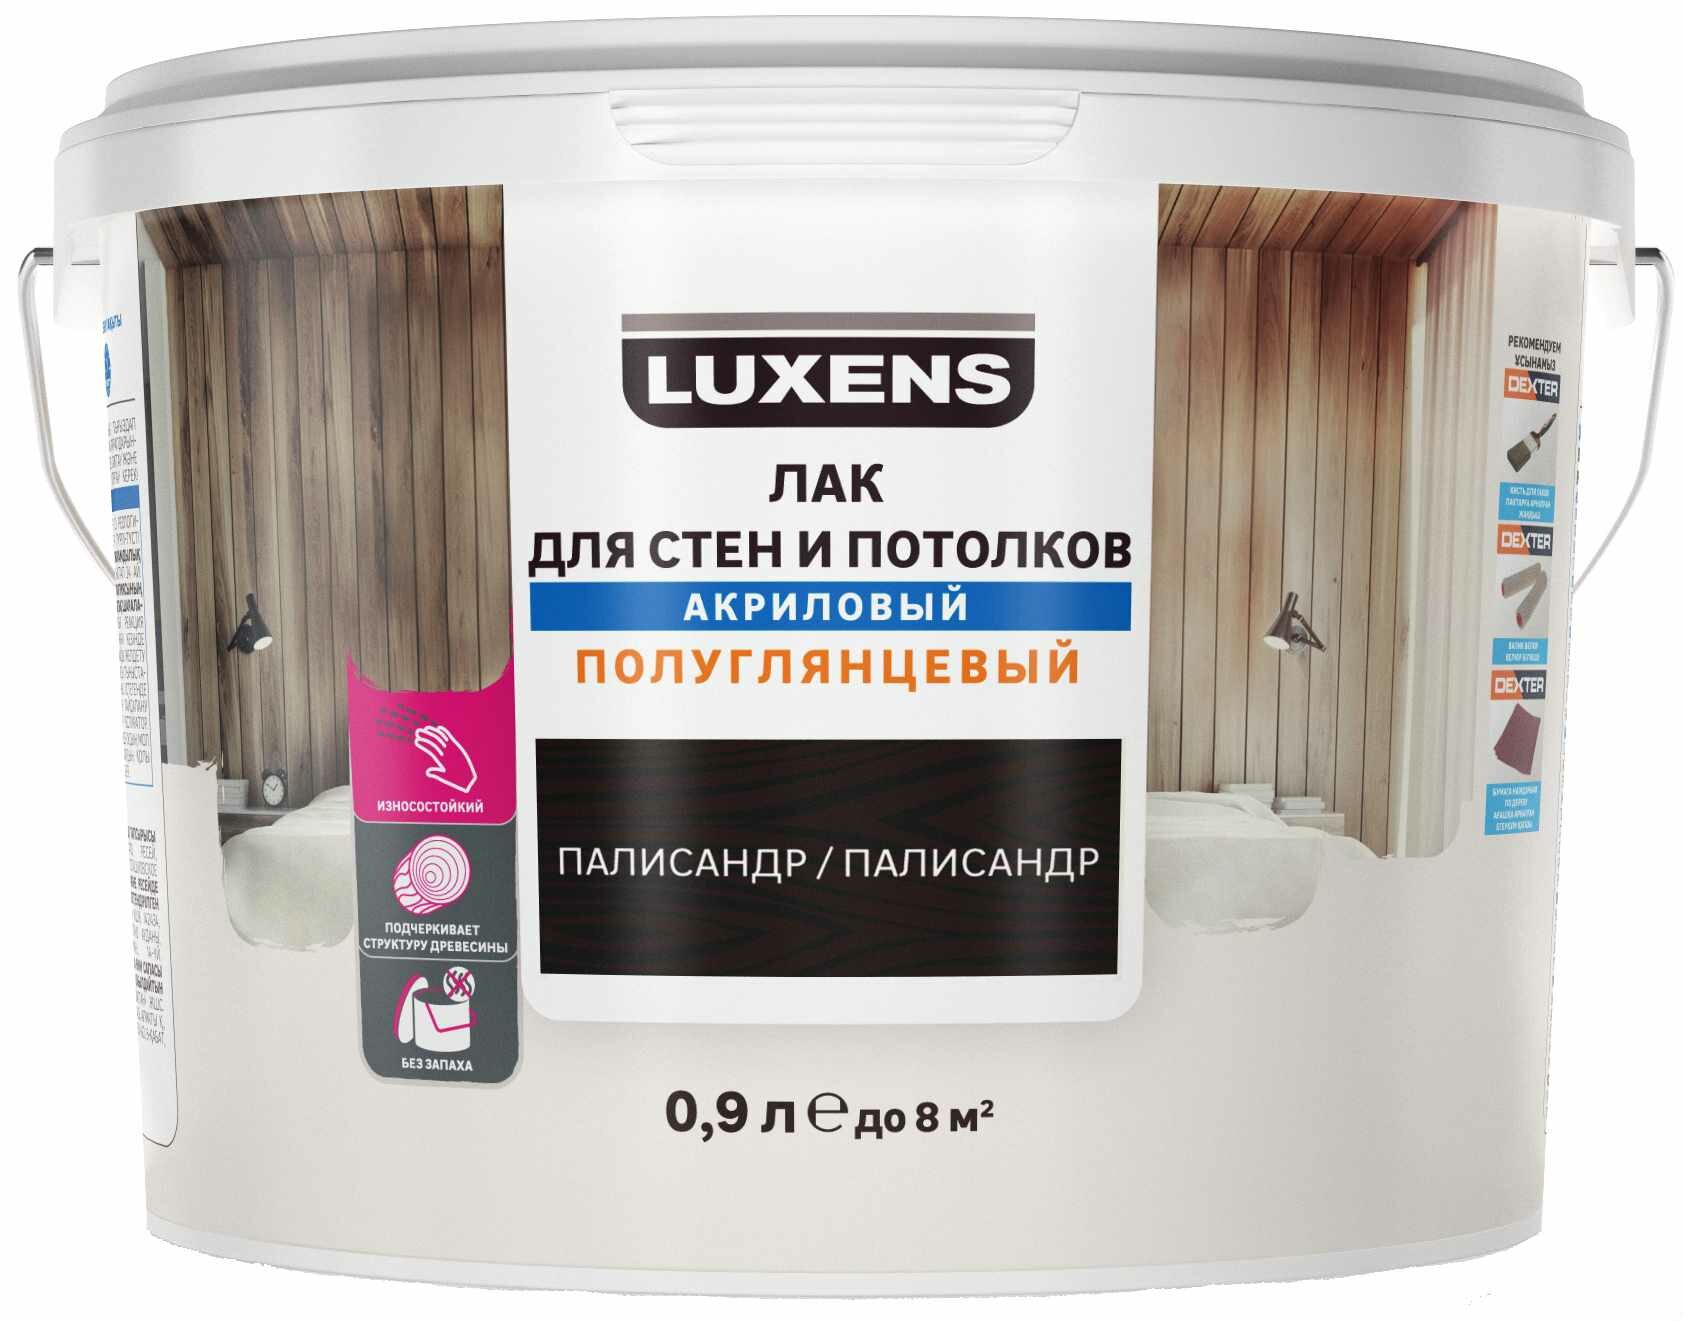 Лак для стен и потолков Luxens акриловый цвет палисандр полуглянцевый 0.9 л